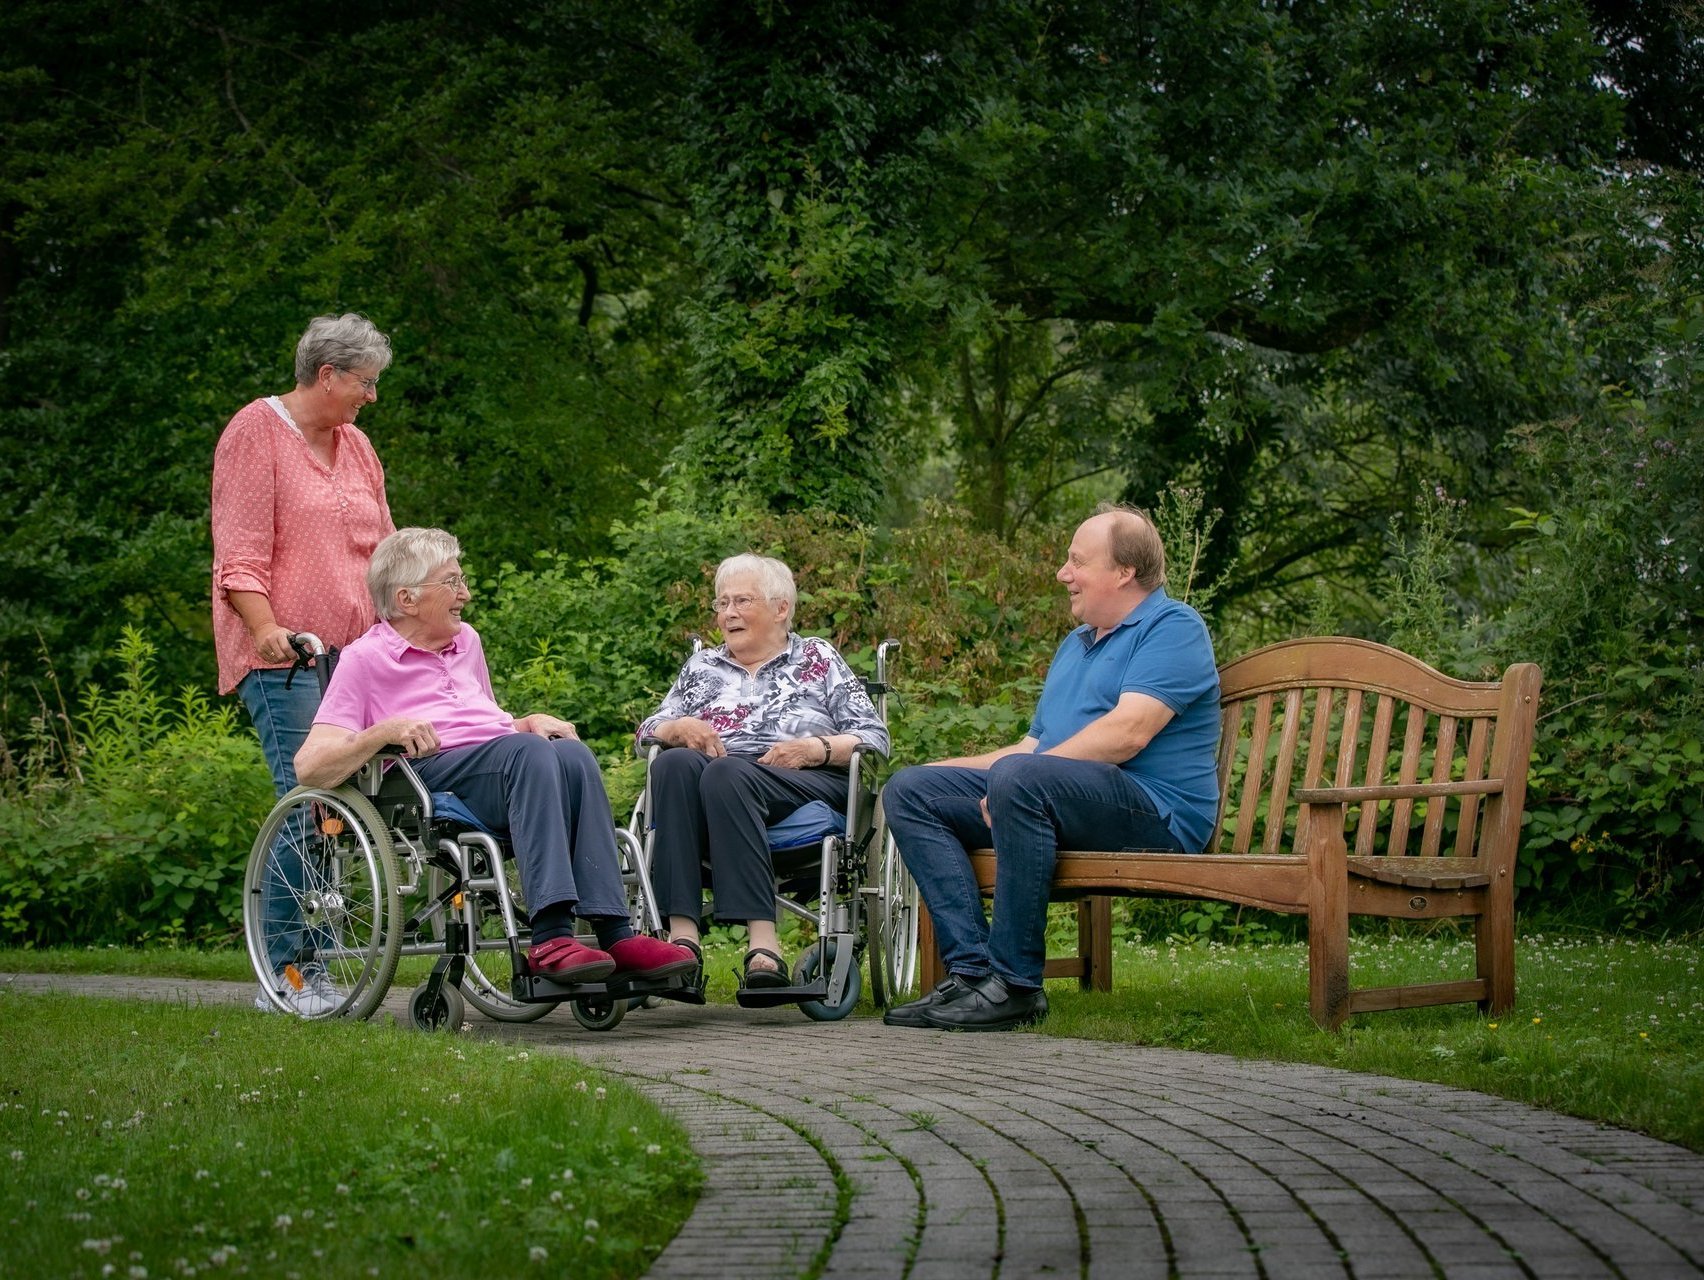 Vier Personen unterhalten sich in einem grünen Park, eine Person sitzt auf einer Holzbank.